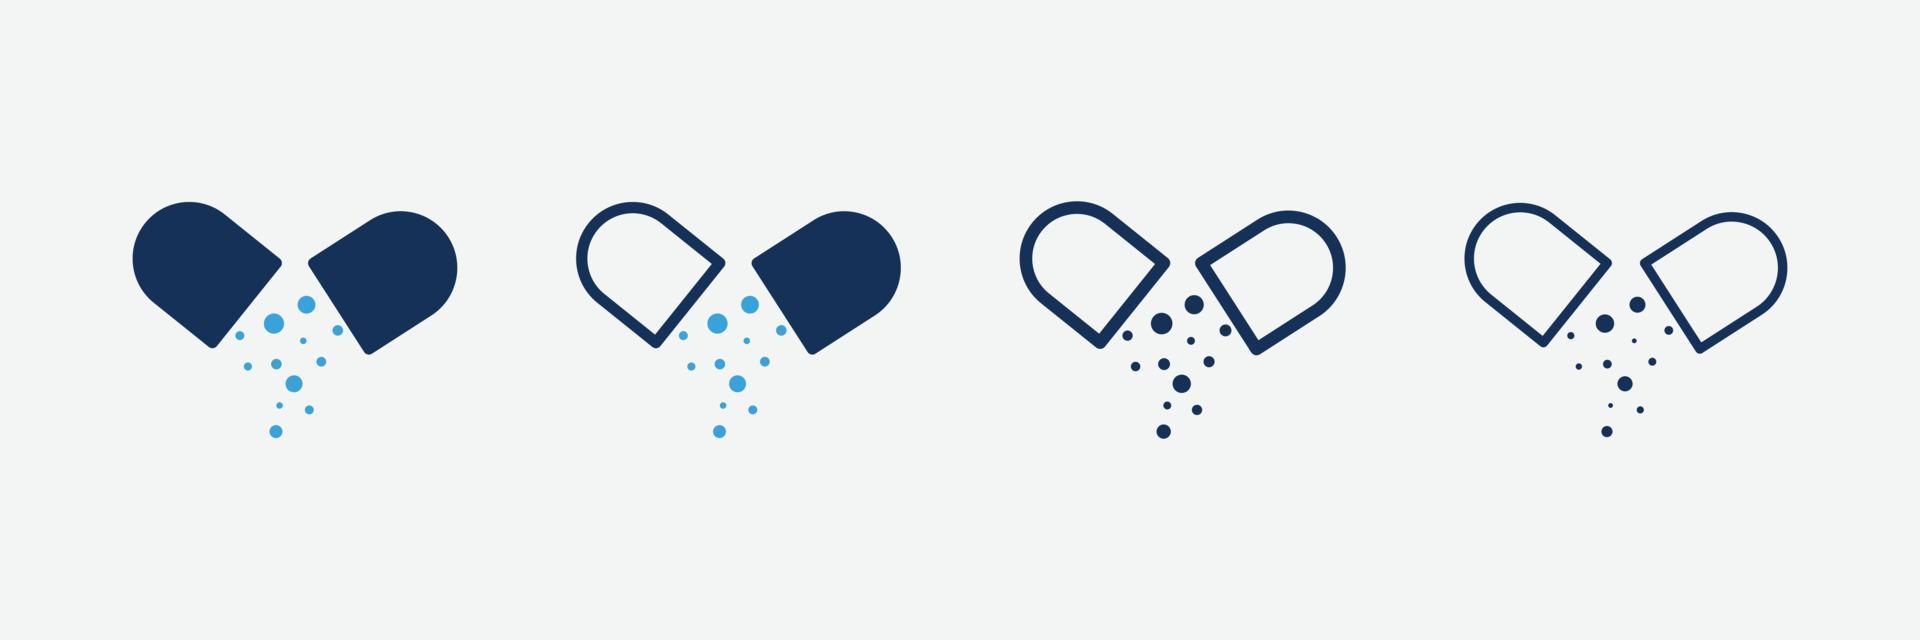 conjunto de ícones de farmácia médica símbolo isolado em ilustração de estilo diferente vetor